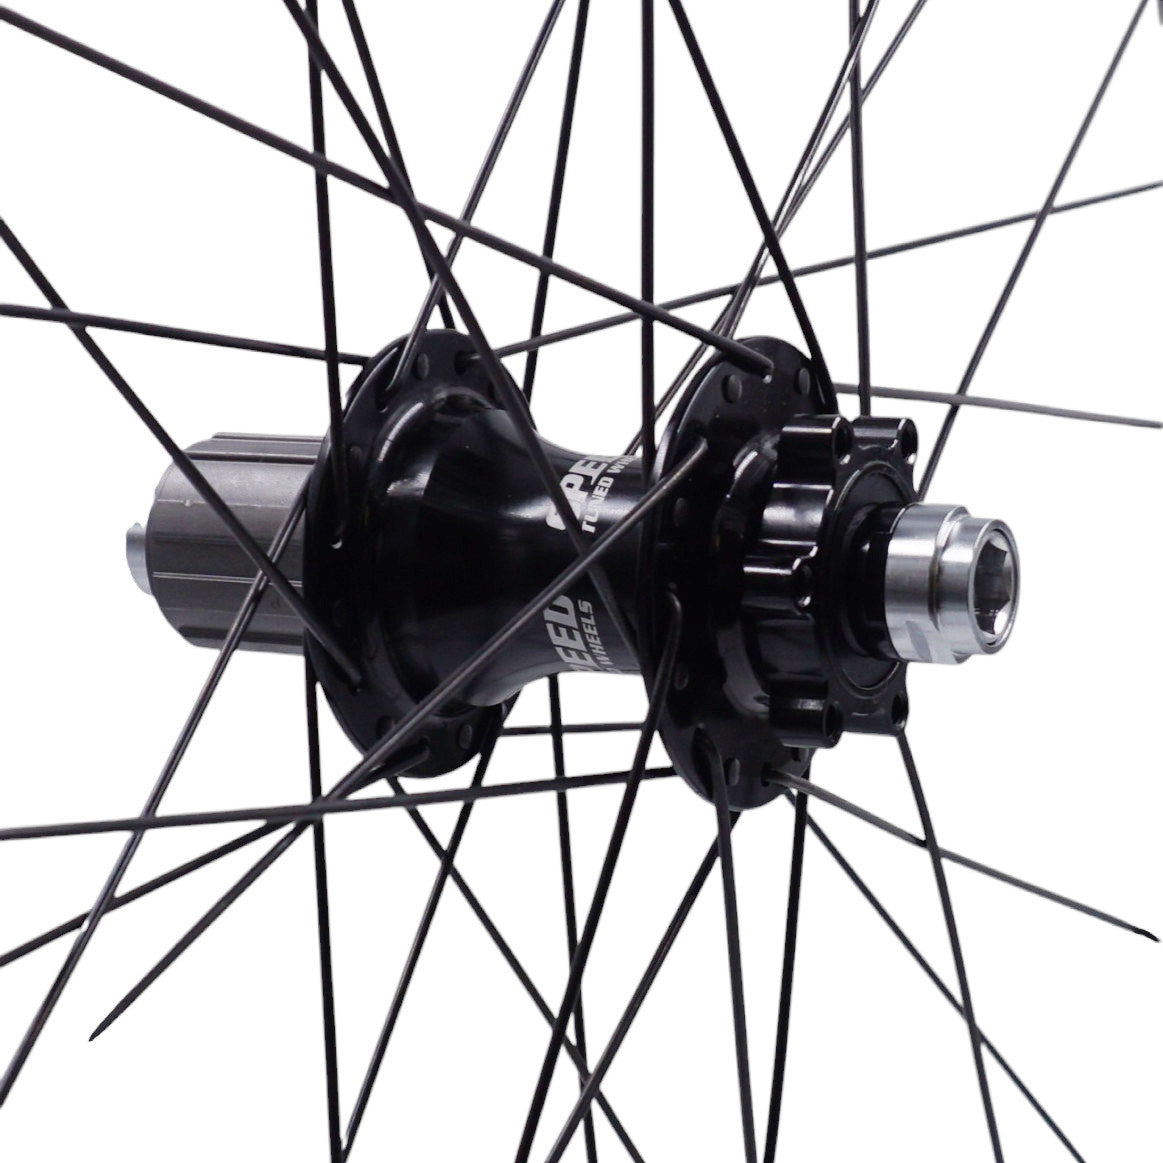 Sun Ringle Duroc 30 29-inch 12x142 Rear Thru-Axle Bike Wheel